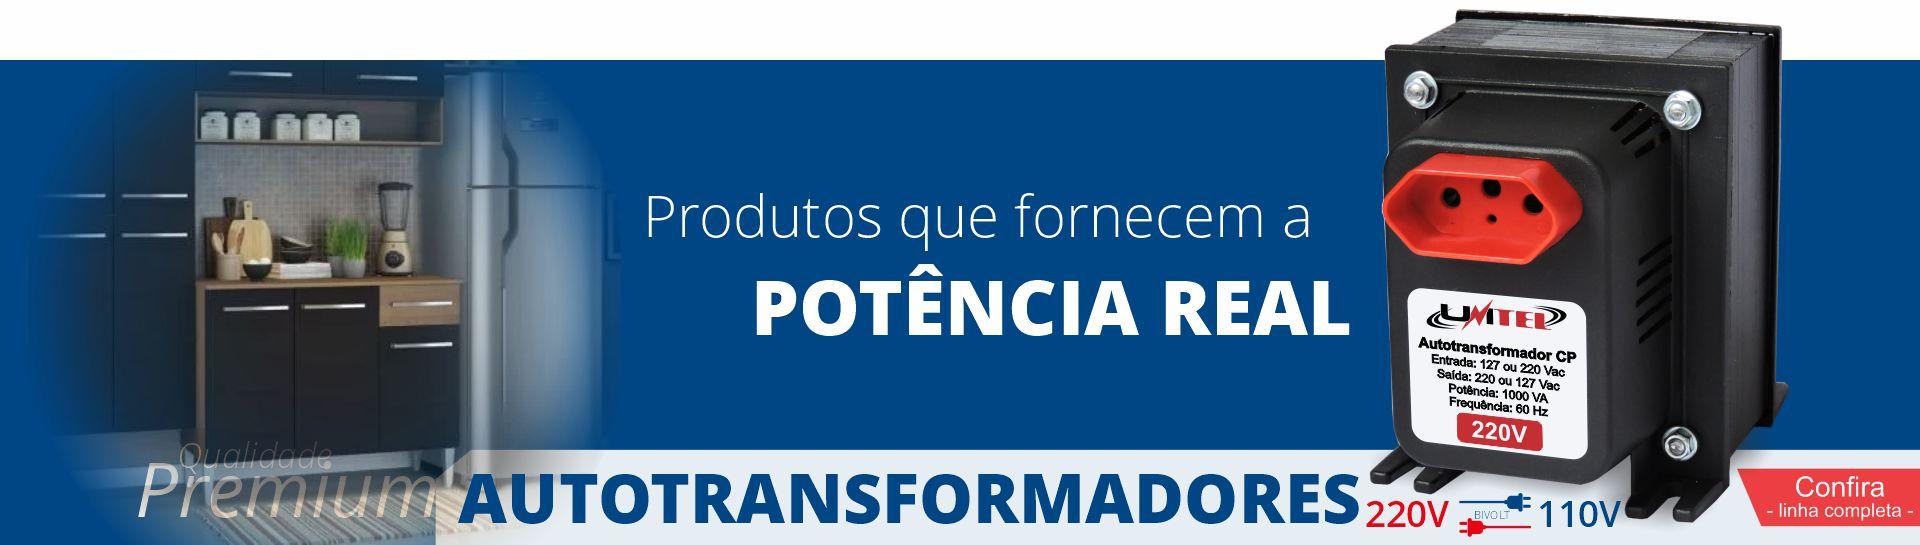 Autotransformadores - A Unitel Transformadores é uma empresa do ramo eletroeletrônico fundada em abril de 1996 na cidade de Pelotas, estado do R...Saiba mais.